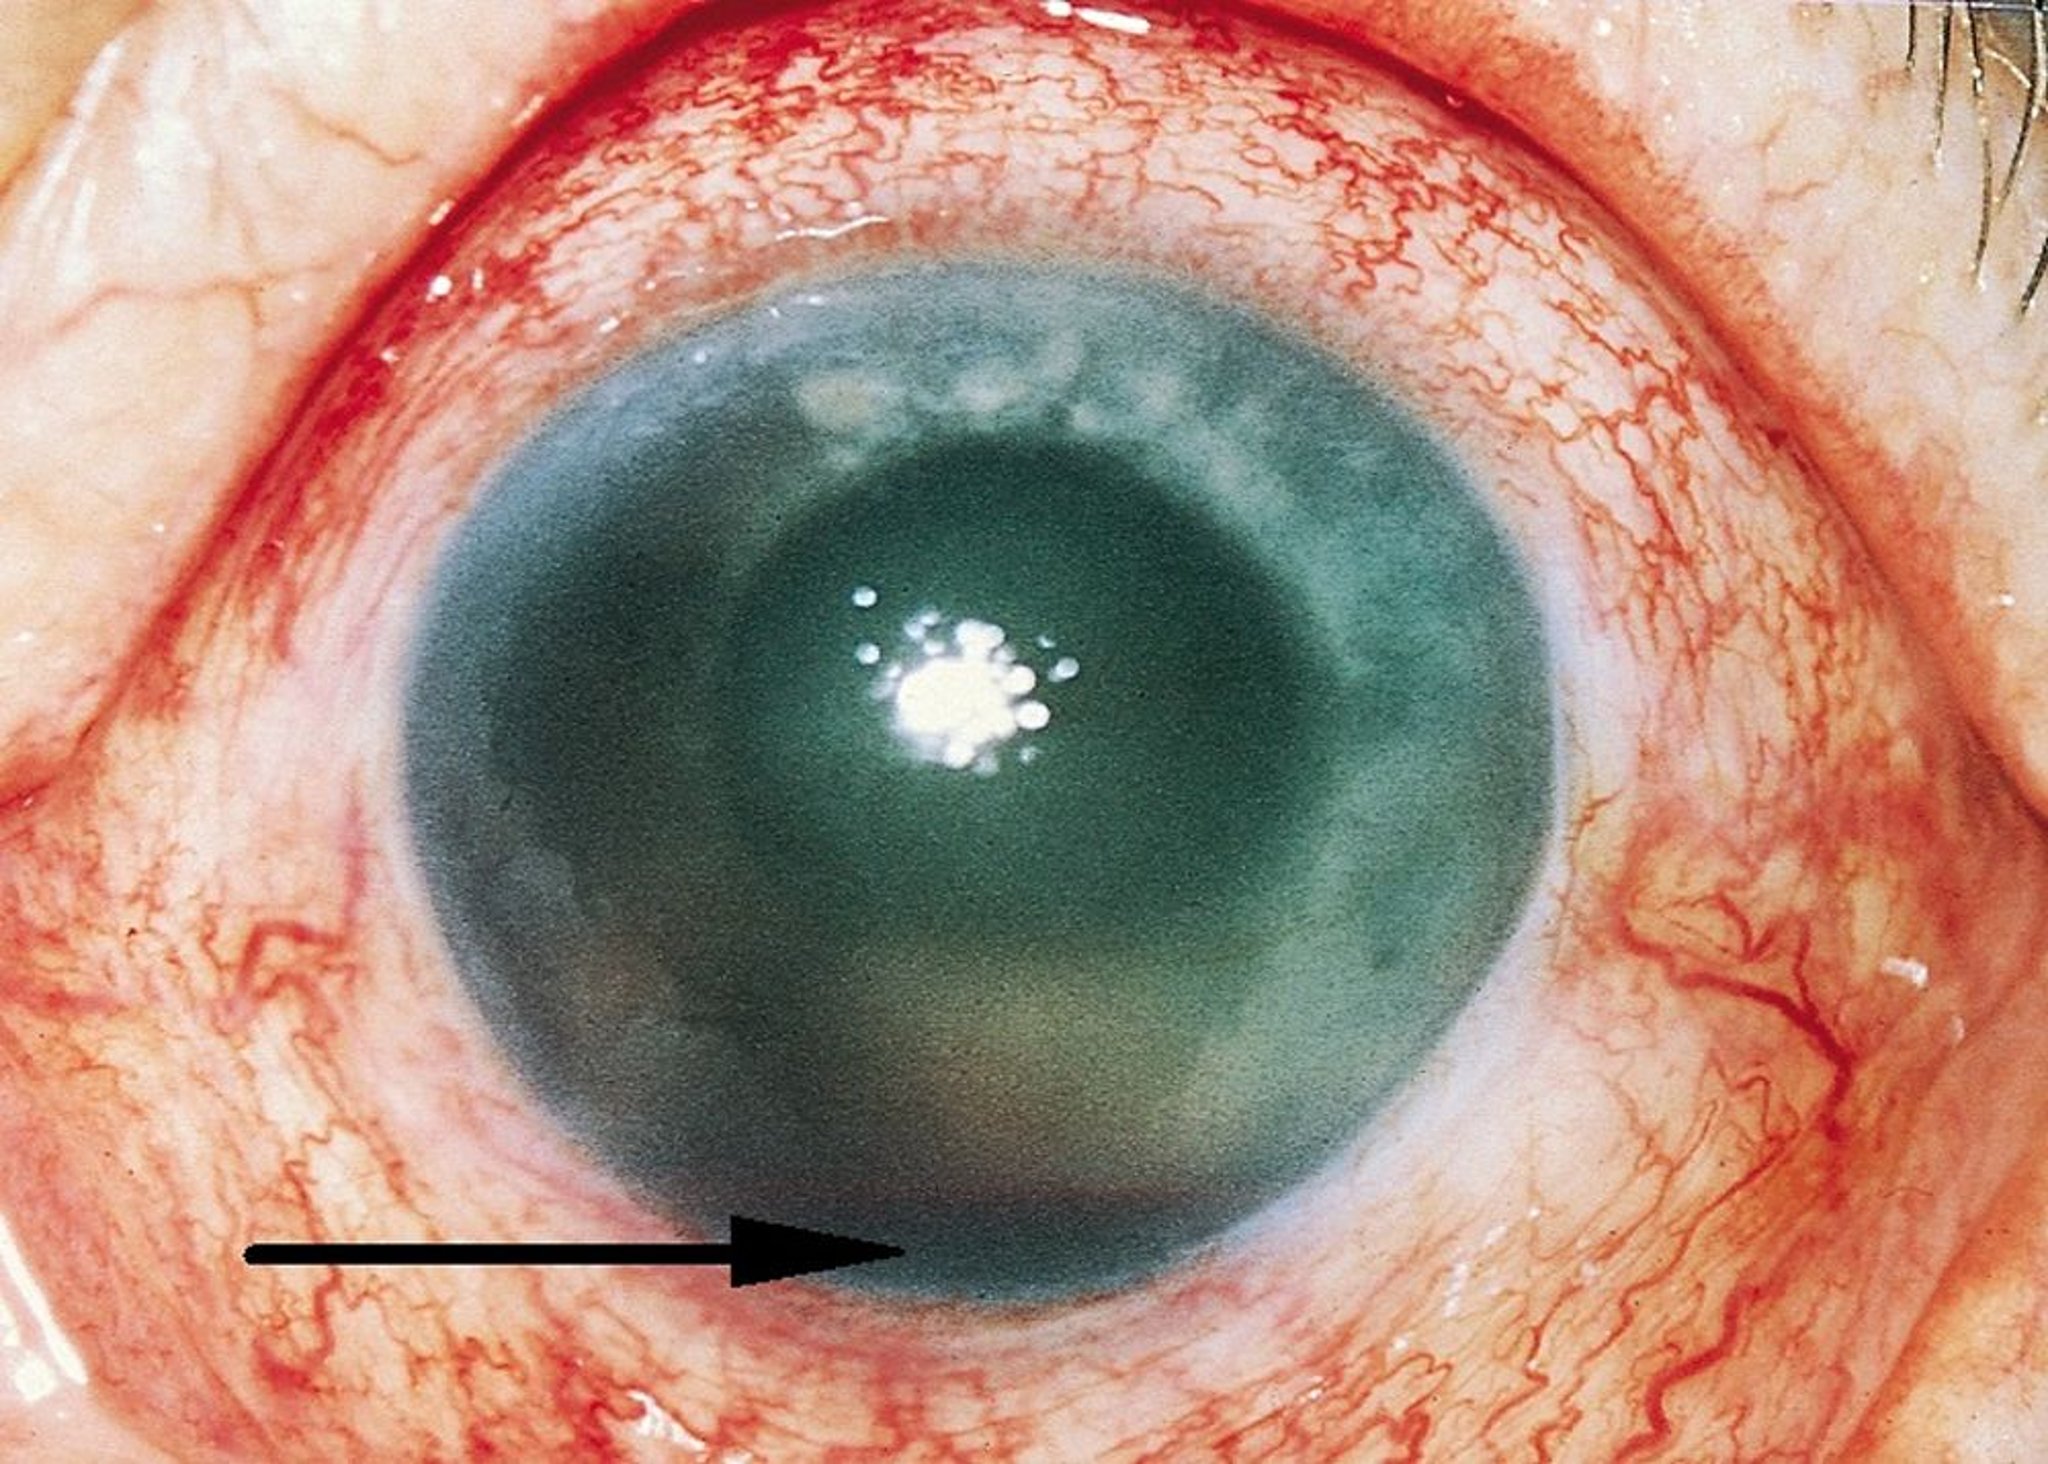 Hemorragia de la cámara anterior (hifema)